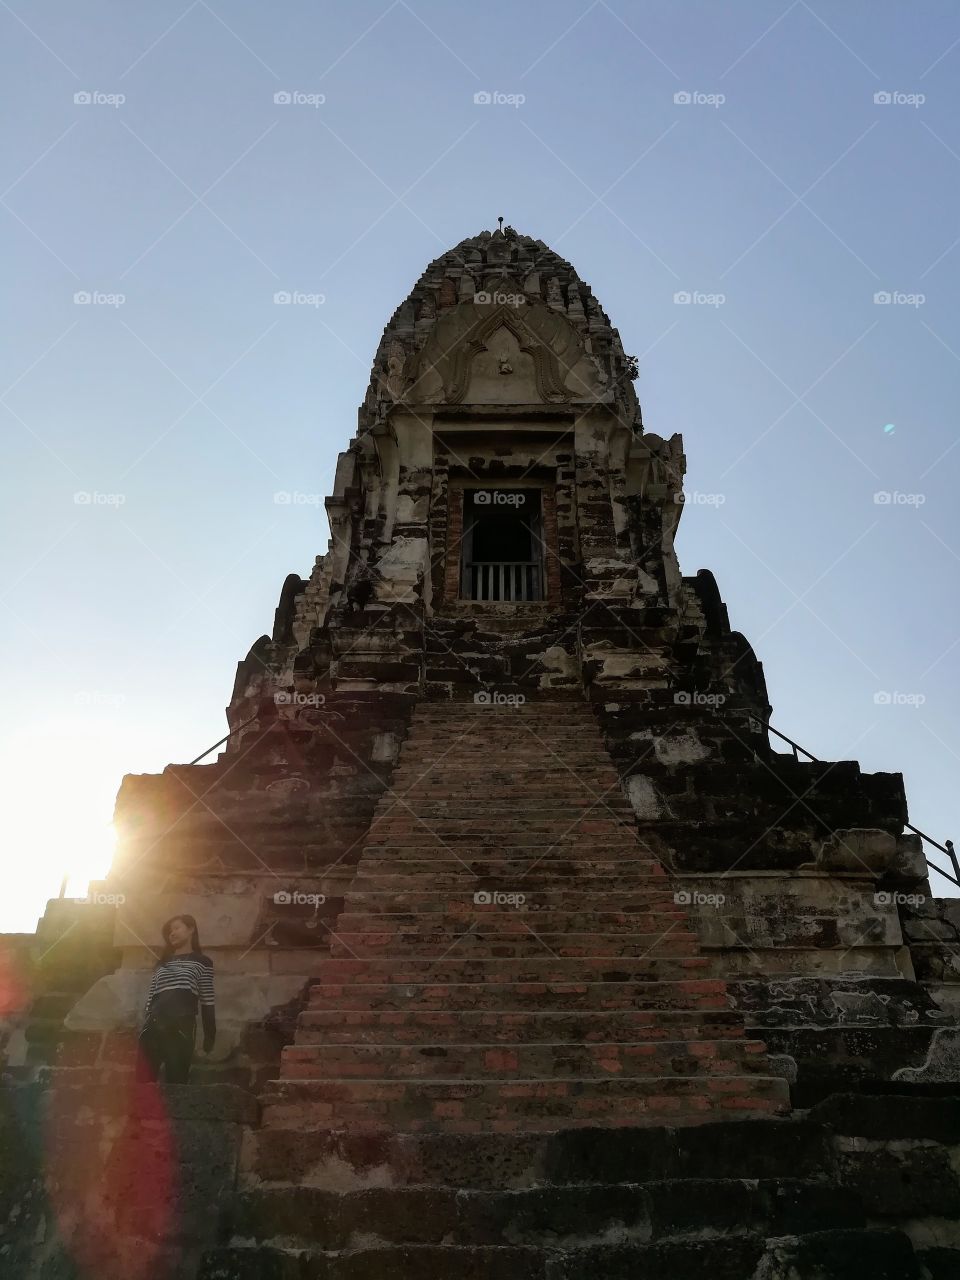 Thailand Temple Ruins